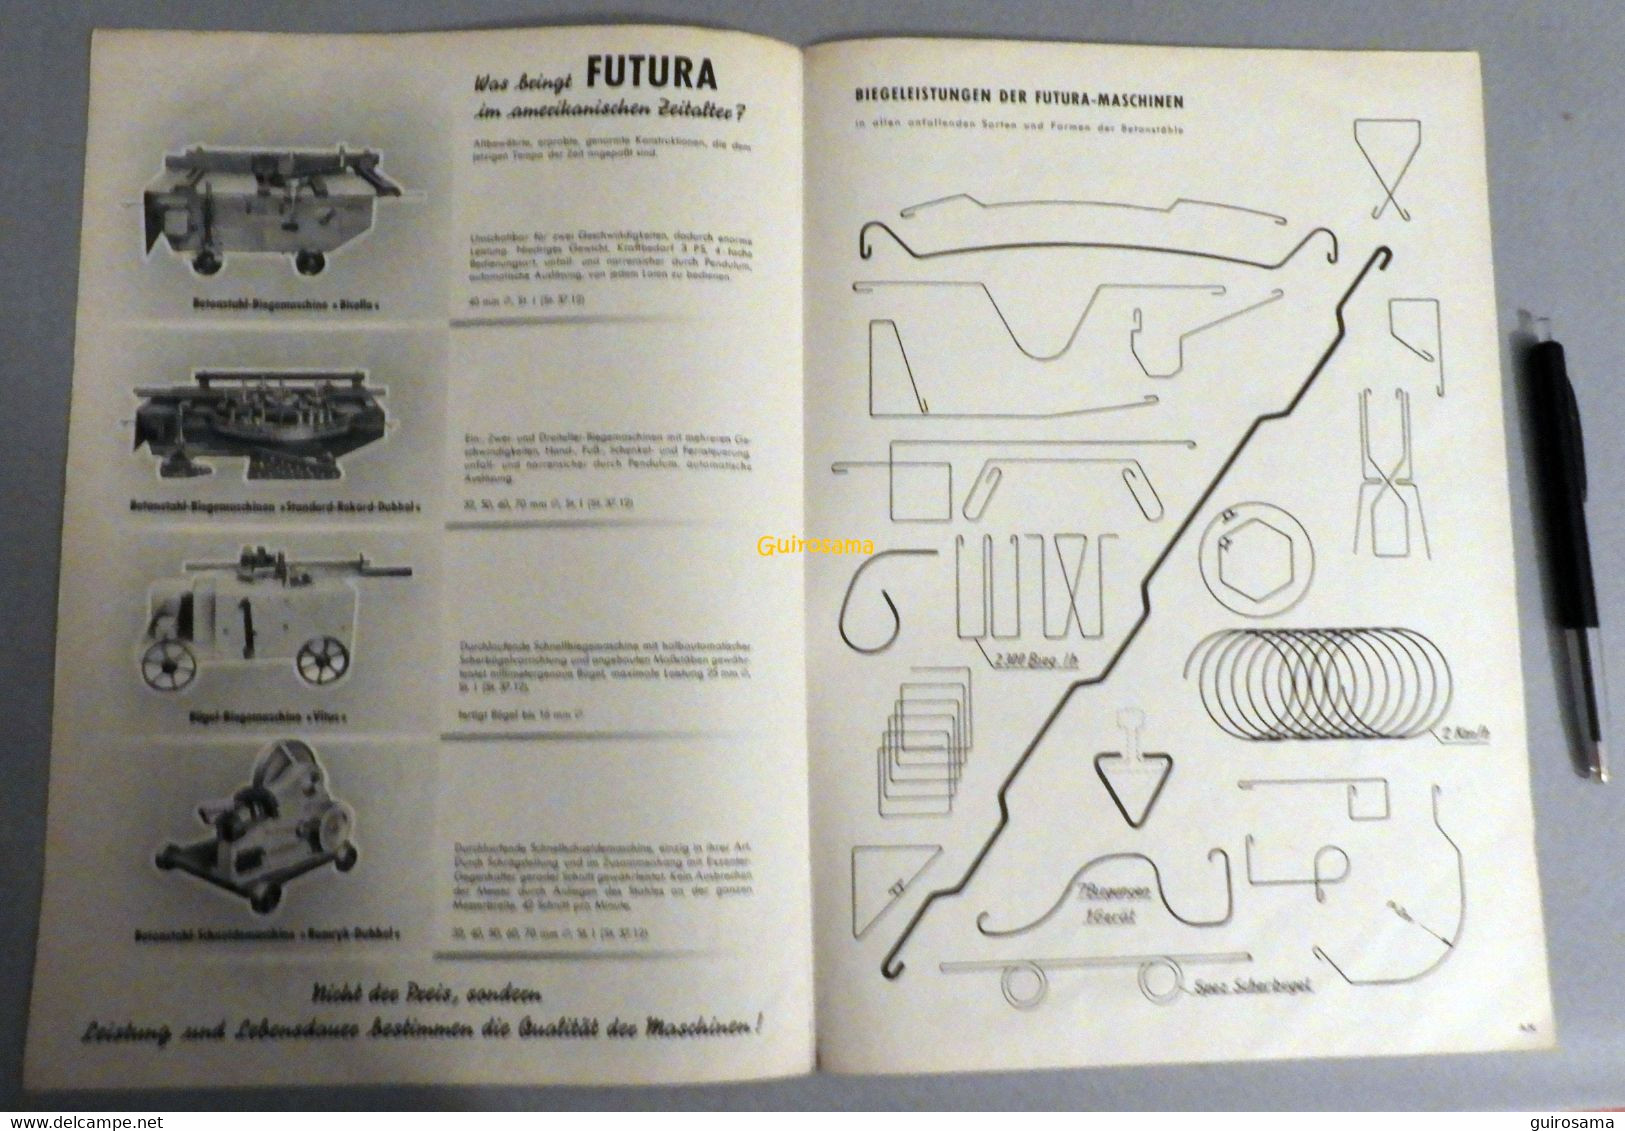 Futura Maschinen - Dess Ed. Freutel - 1954 - Automobile